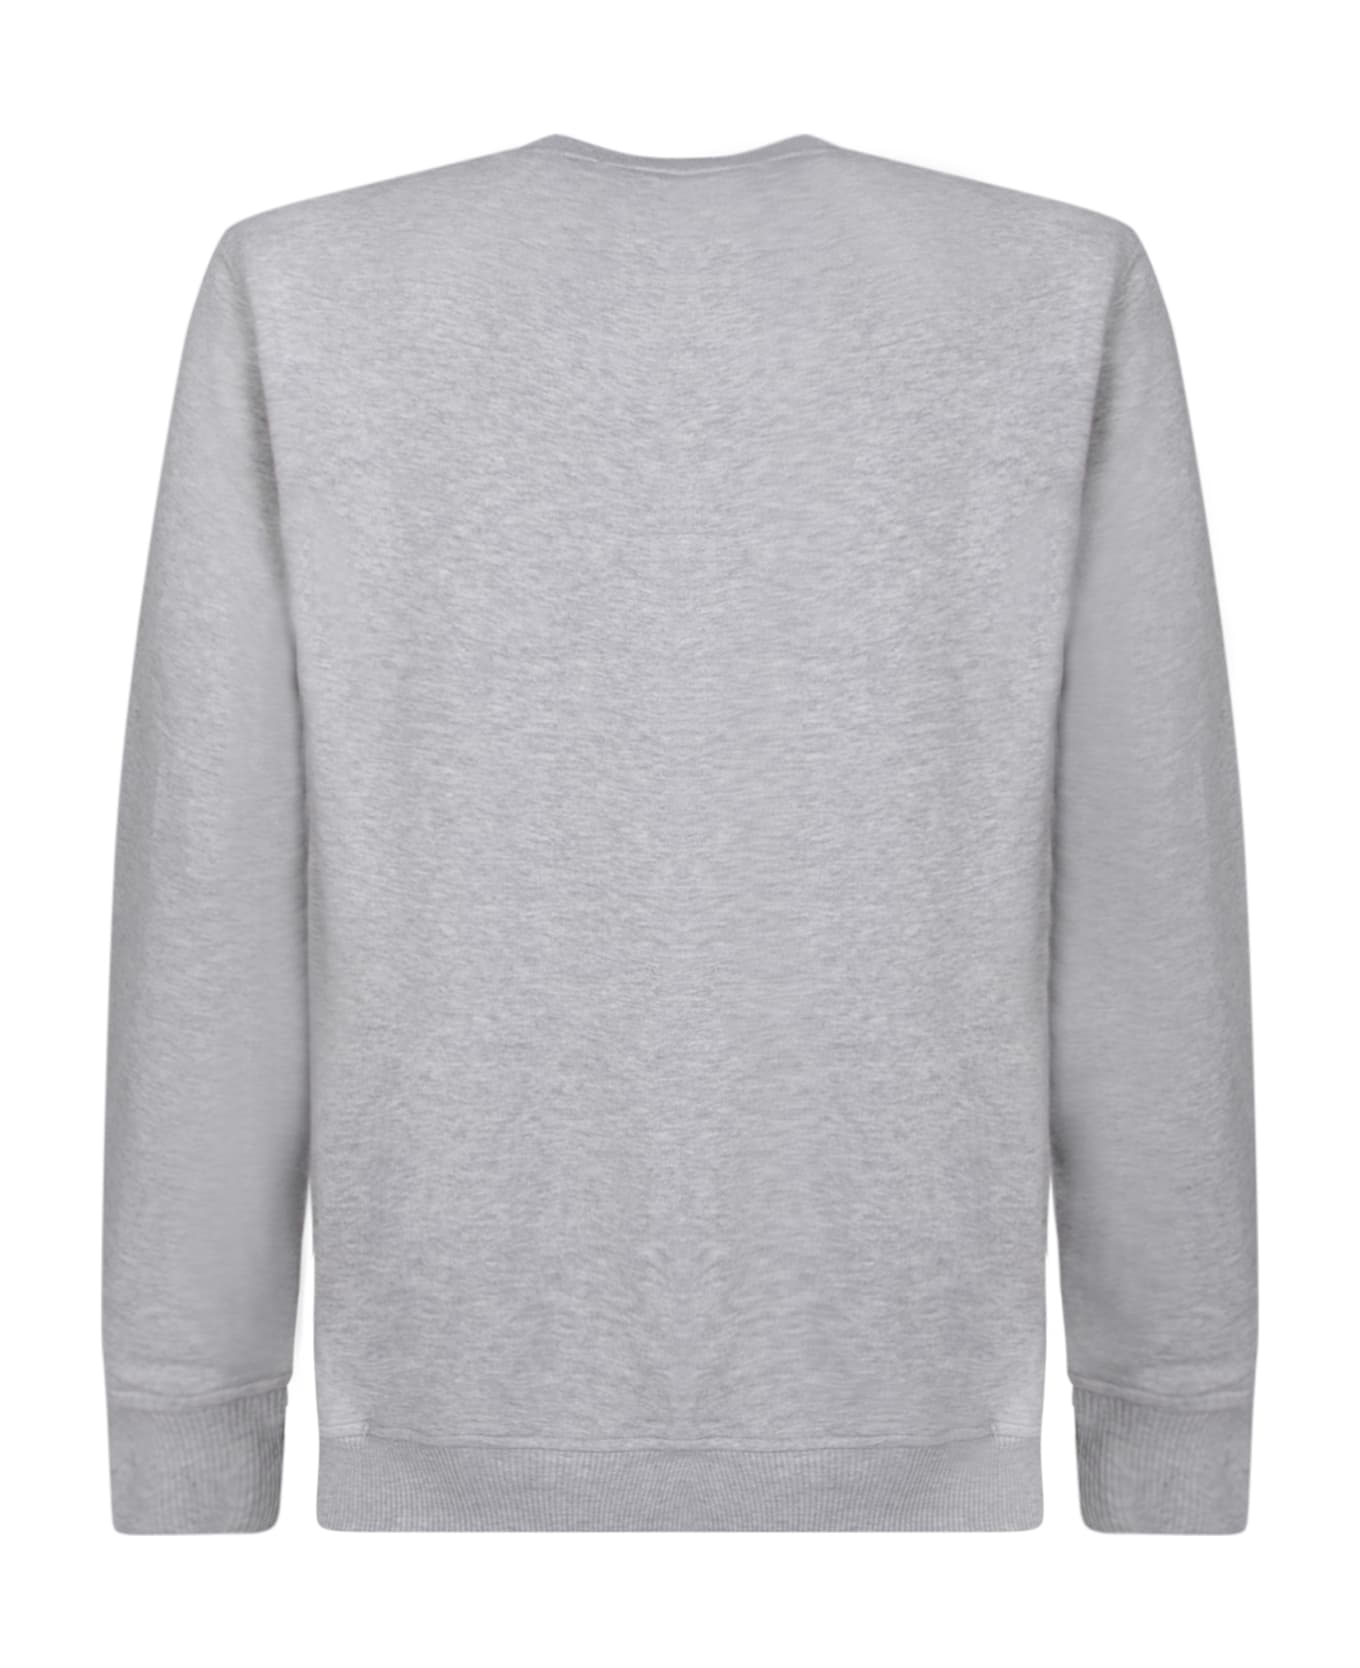 Comme des Garçons Shirt Marilyn Grey Sweatshirt - Grey フリース